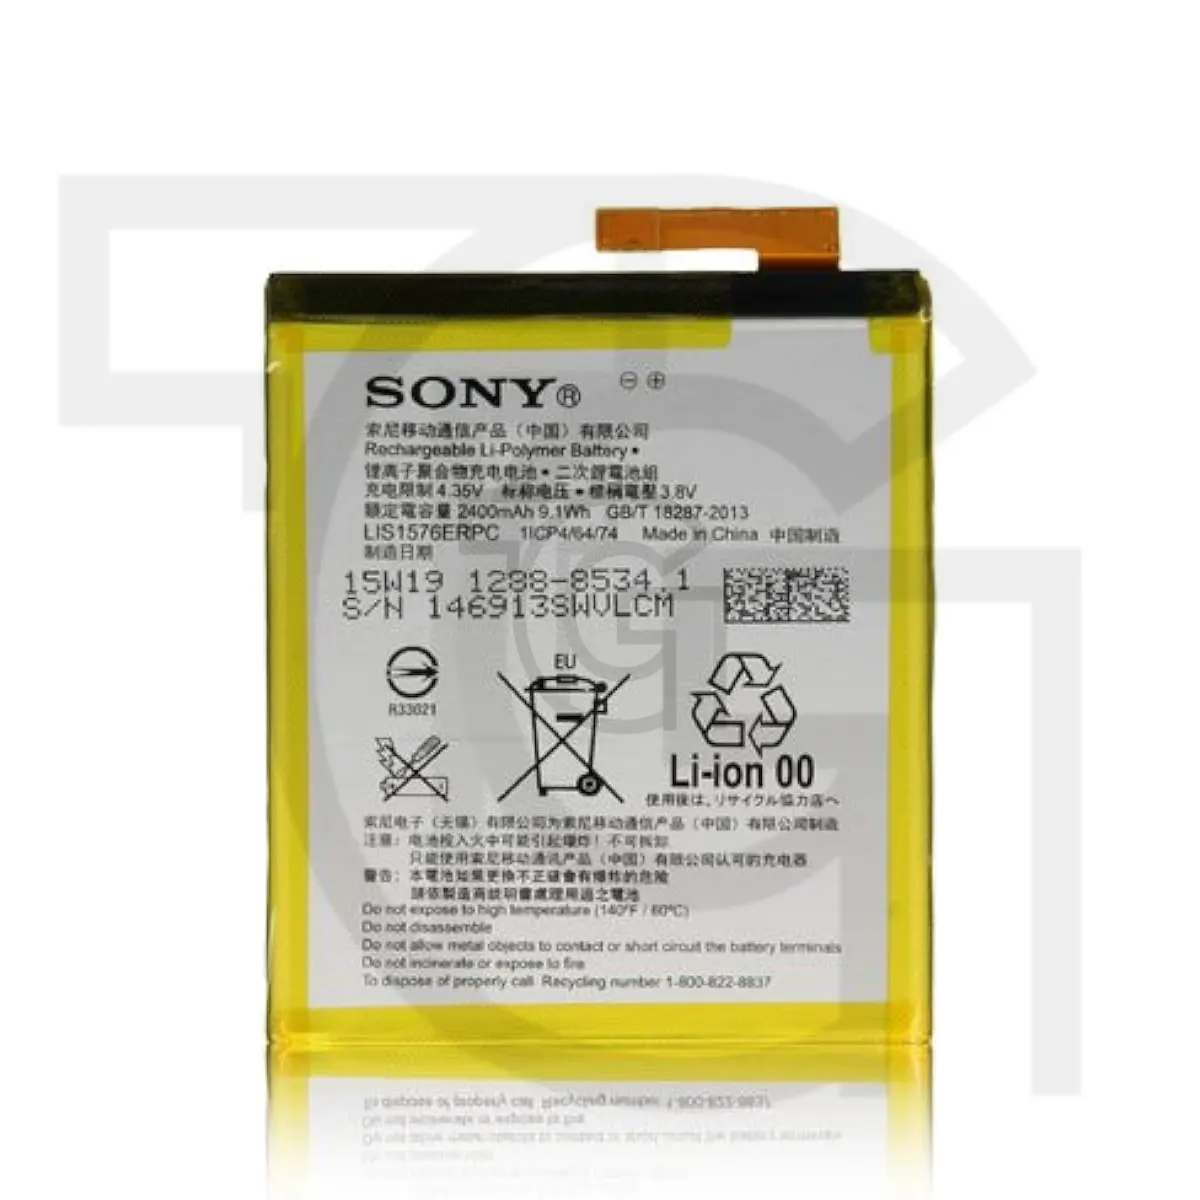 باتری سونی (Sony Xperia (LIS1576ERPC